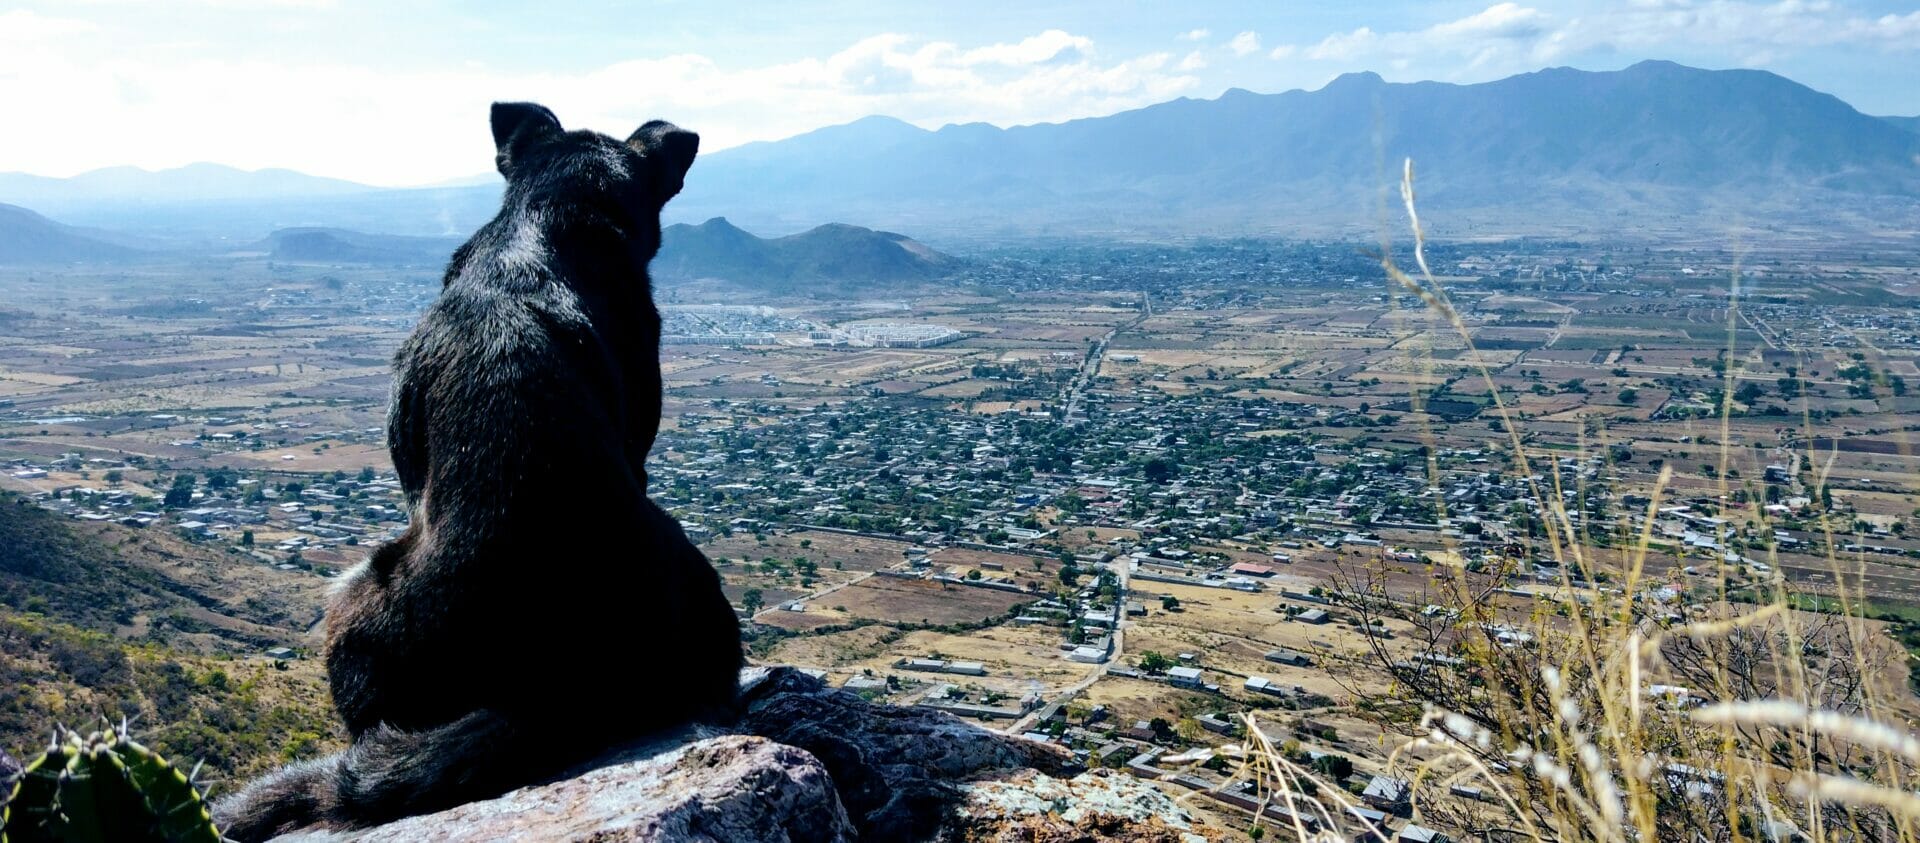 黒い犬がオアハカバレーを眺めている